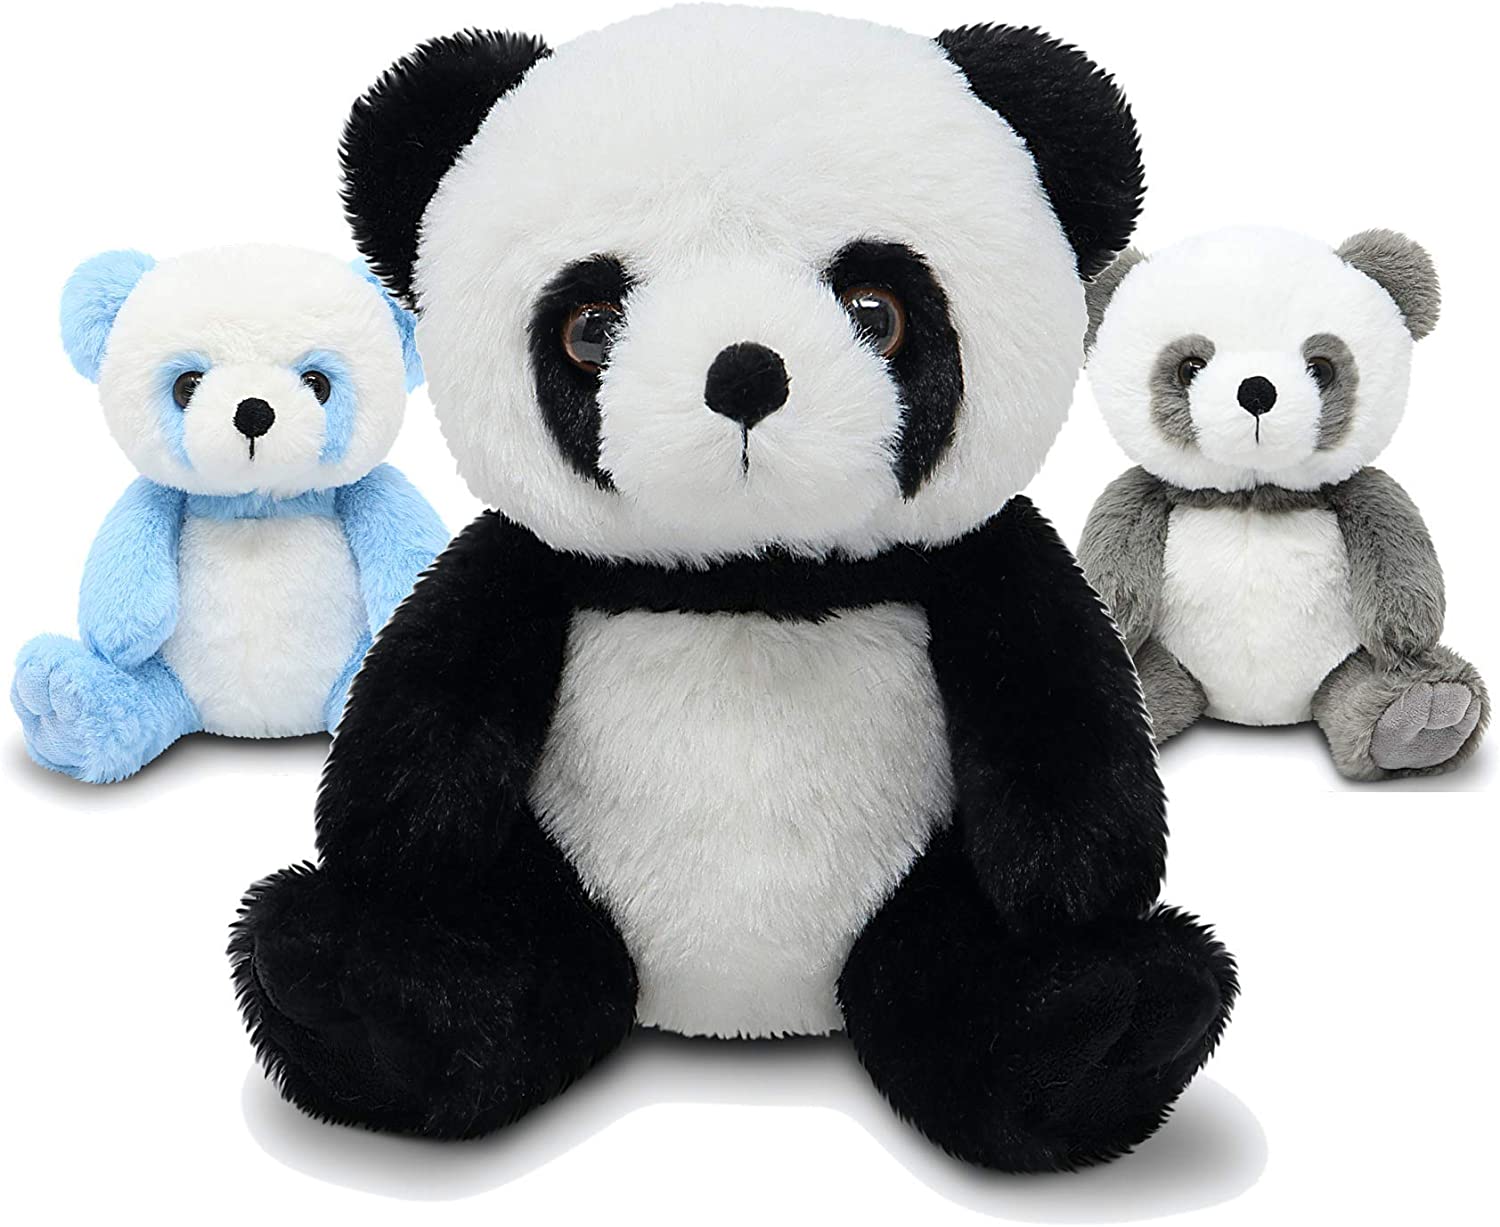 Fluffuns Panda Stuffed Animal - Stuffed Panda Bear Plush Toys - 9 Inches  3-Pack (Black, Blue & Gray)